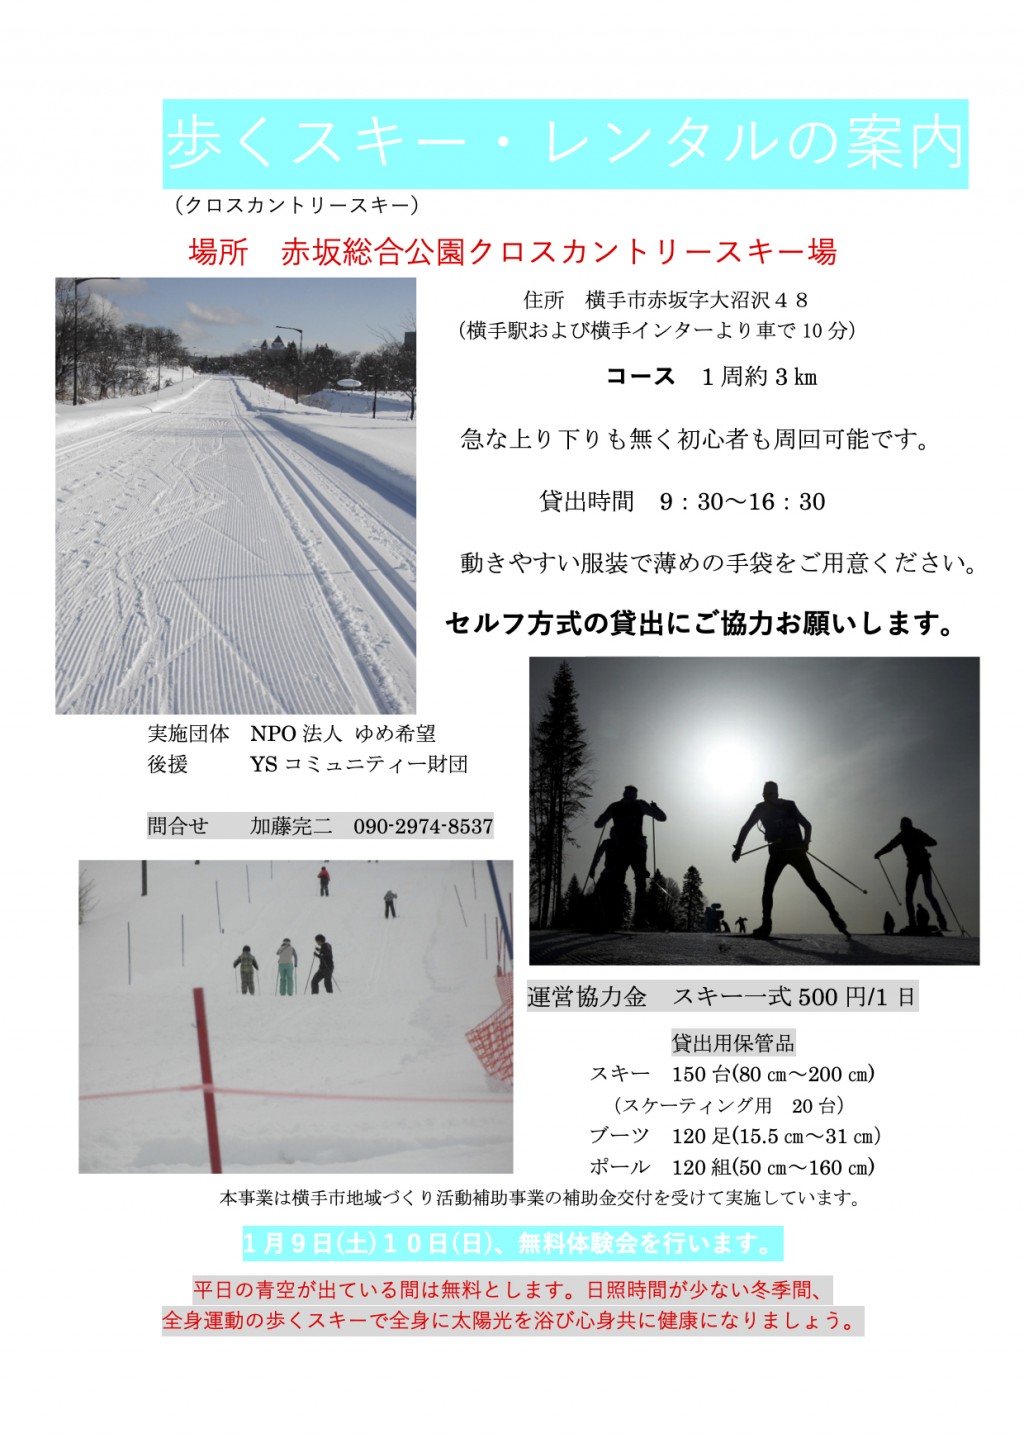 赤坂総合公園クロスカントリースキー場 歩くスキー レンタルのご案内 Mineba